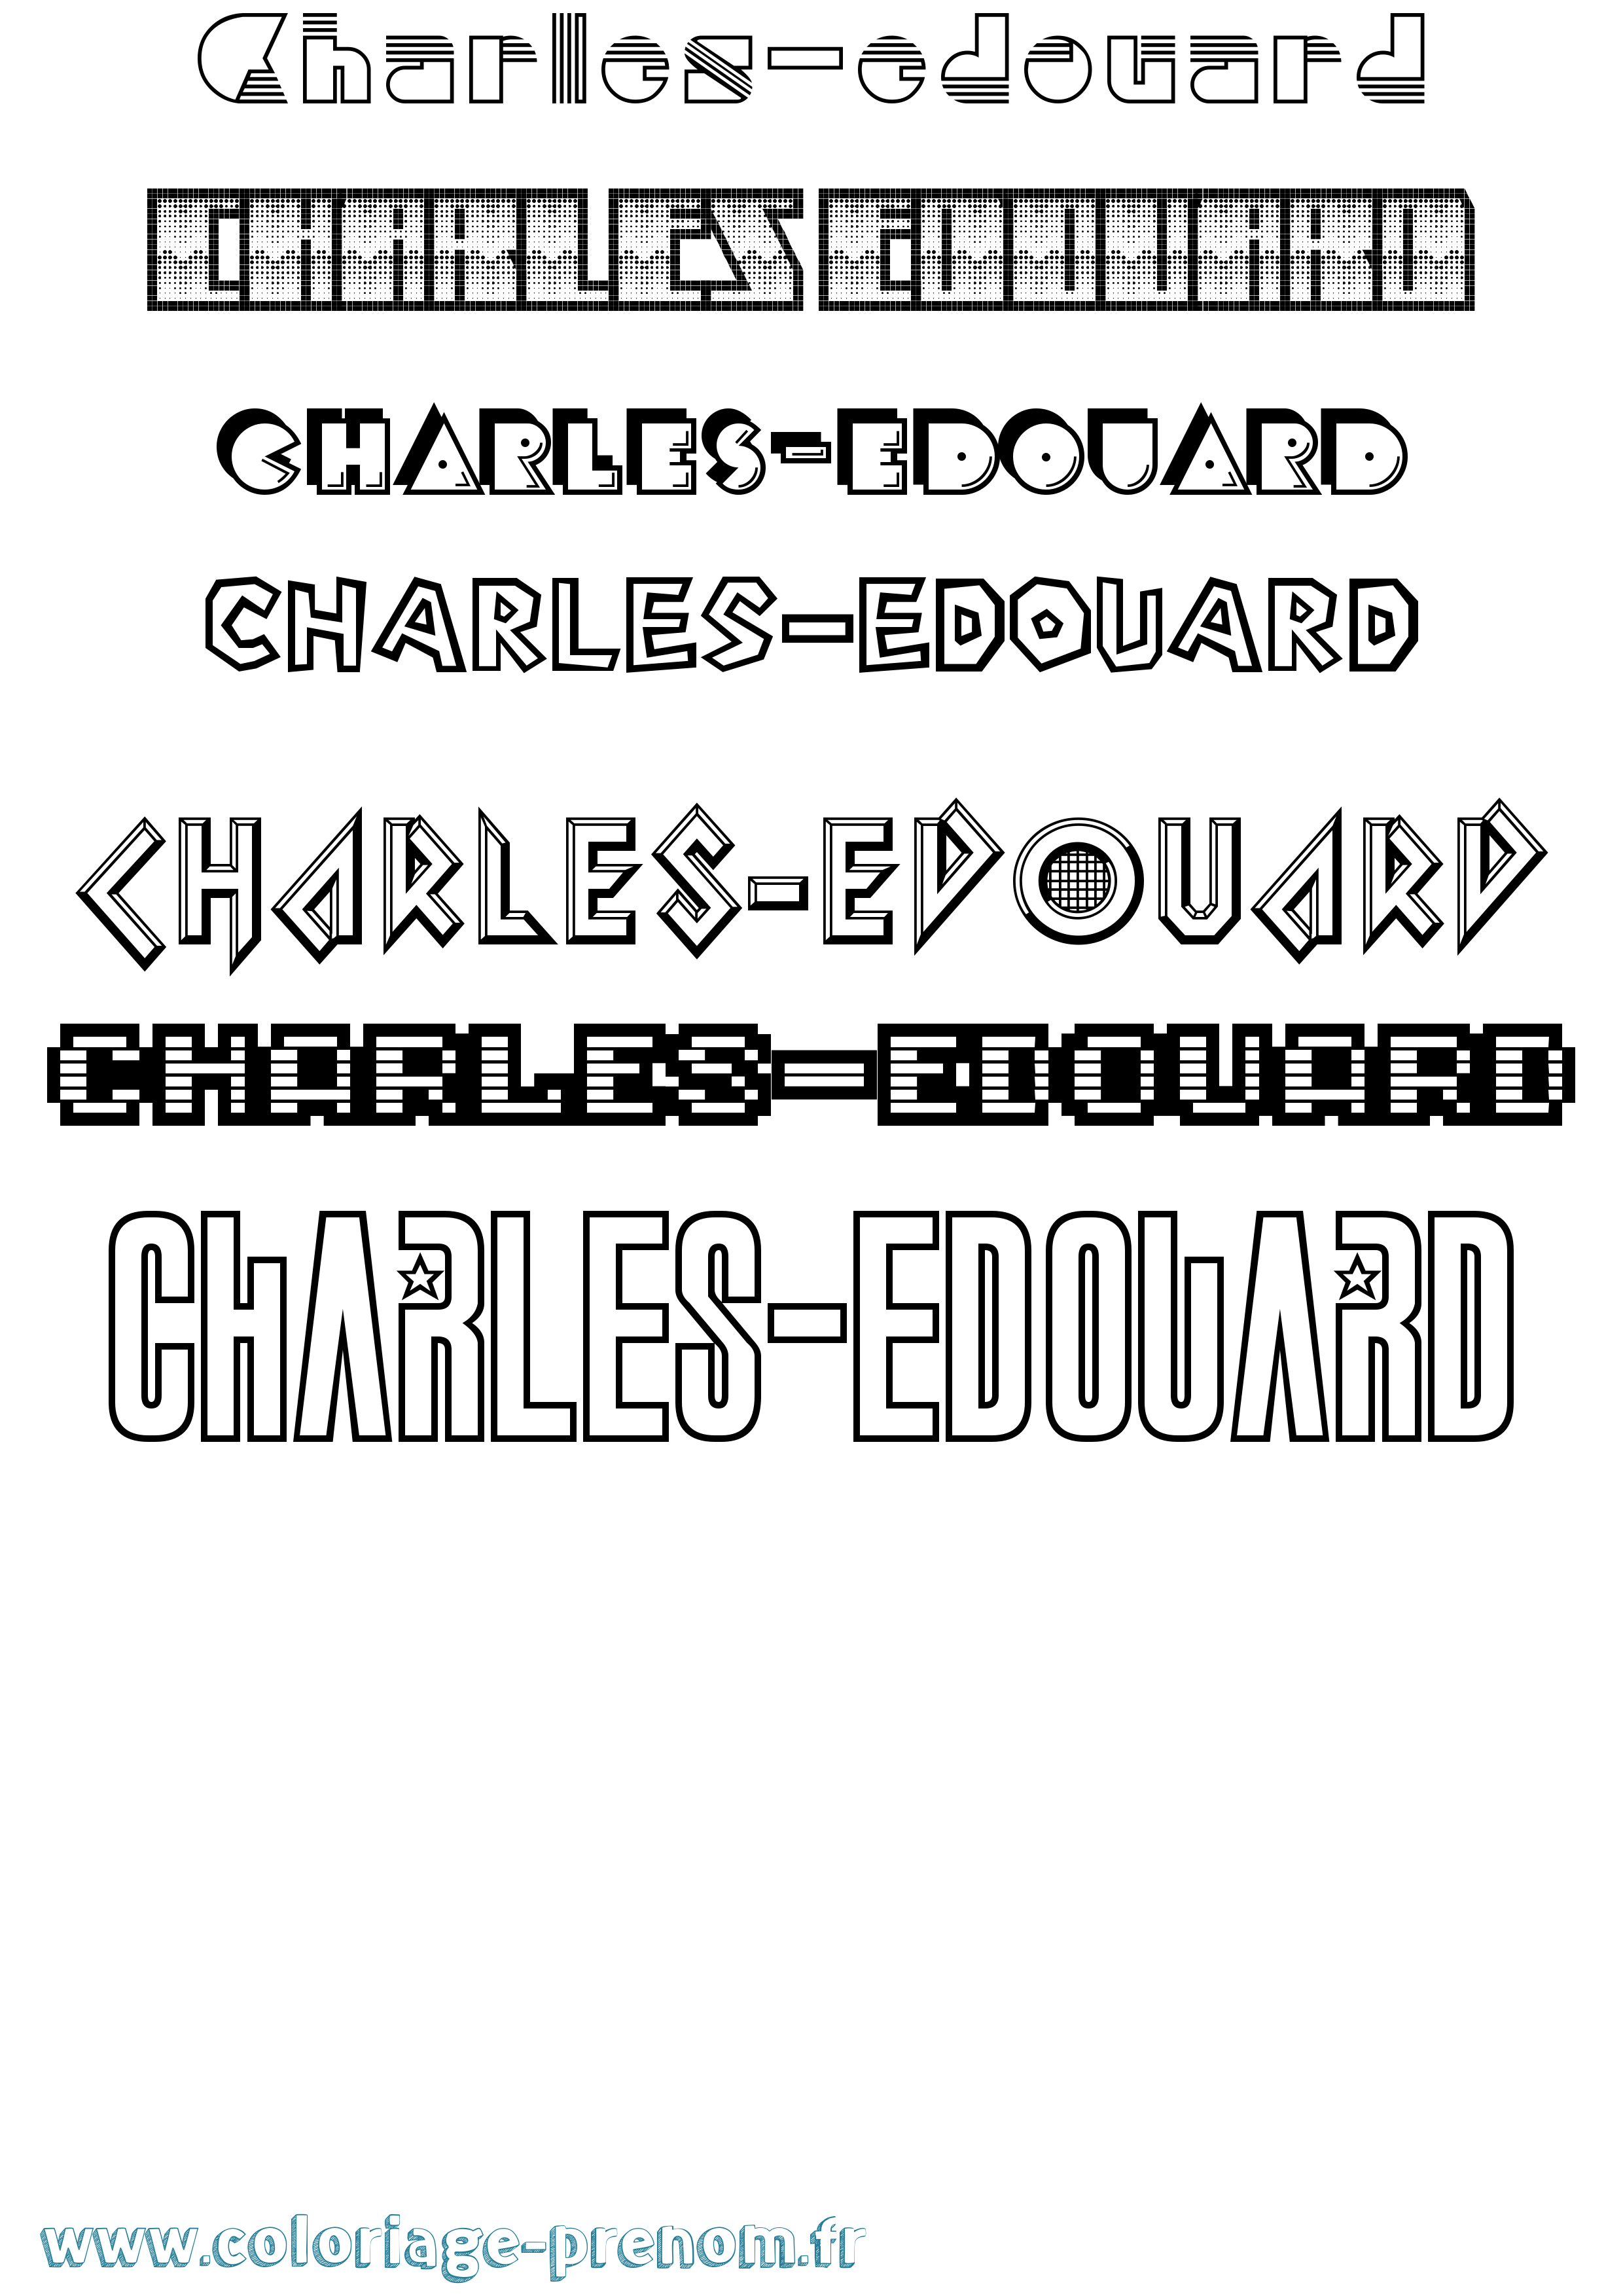 Coloriage prénom Charles-Edouard Jeux Vidéos